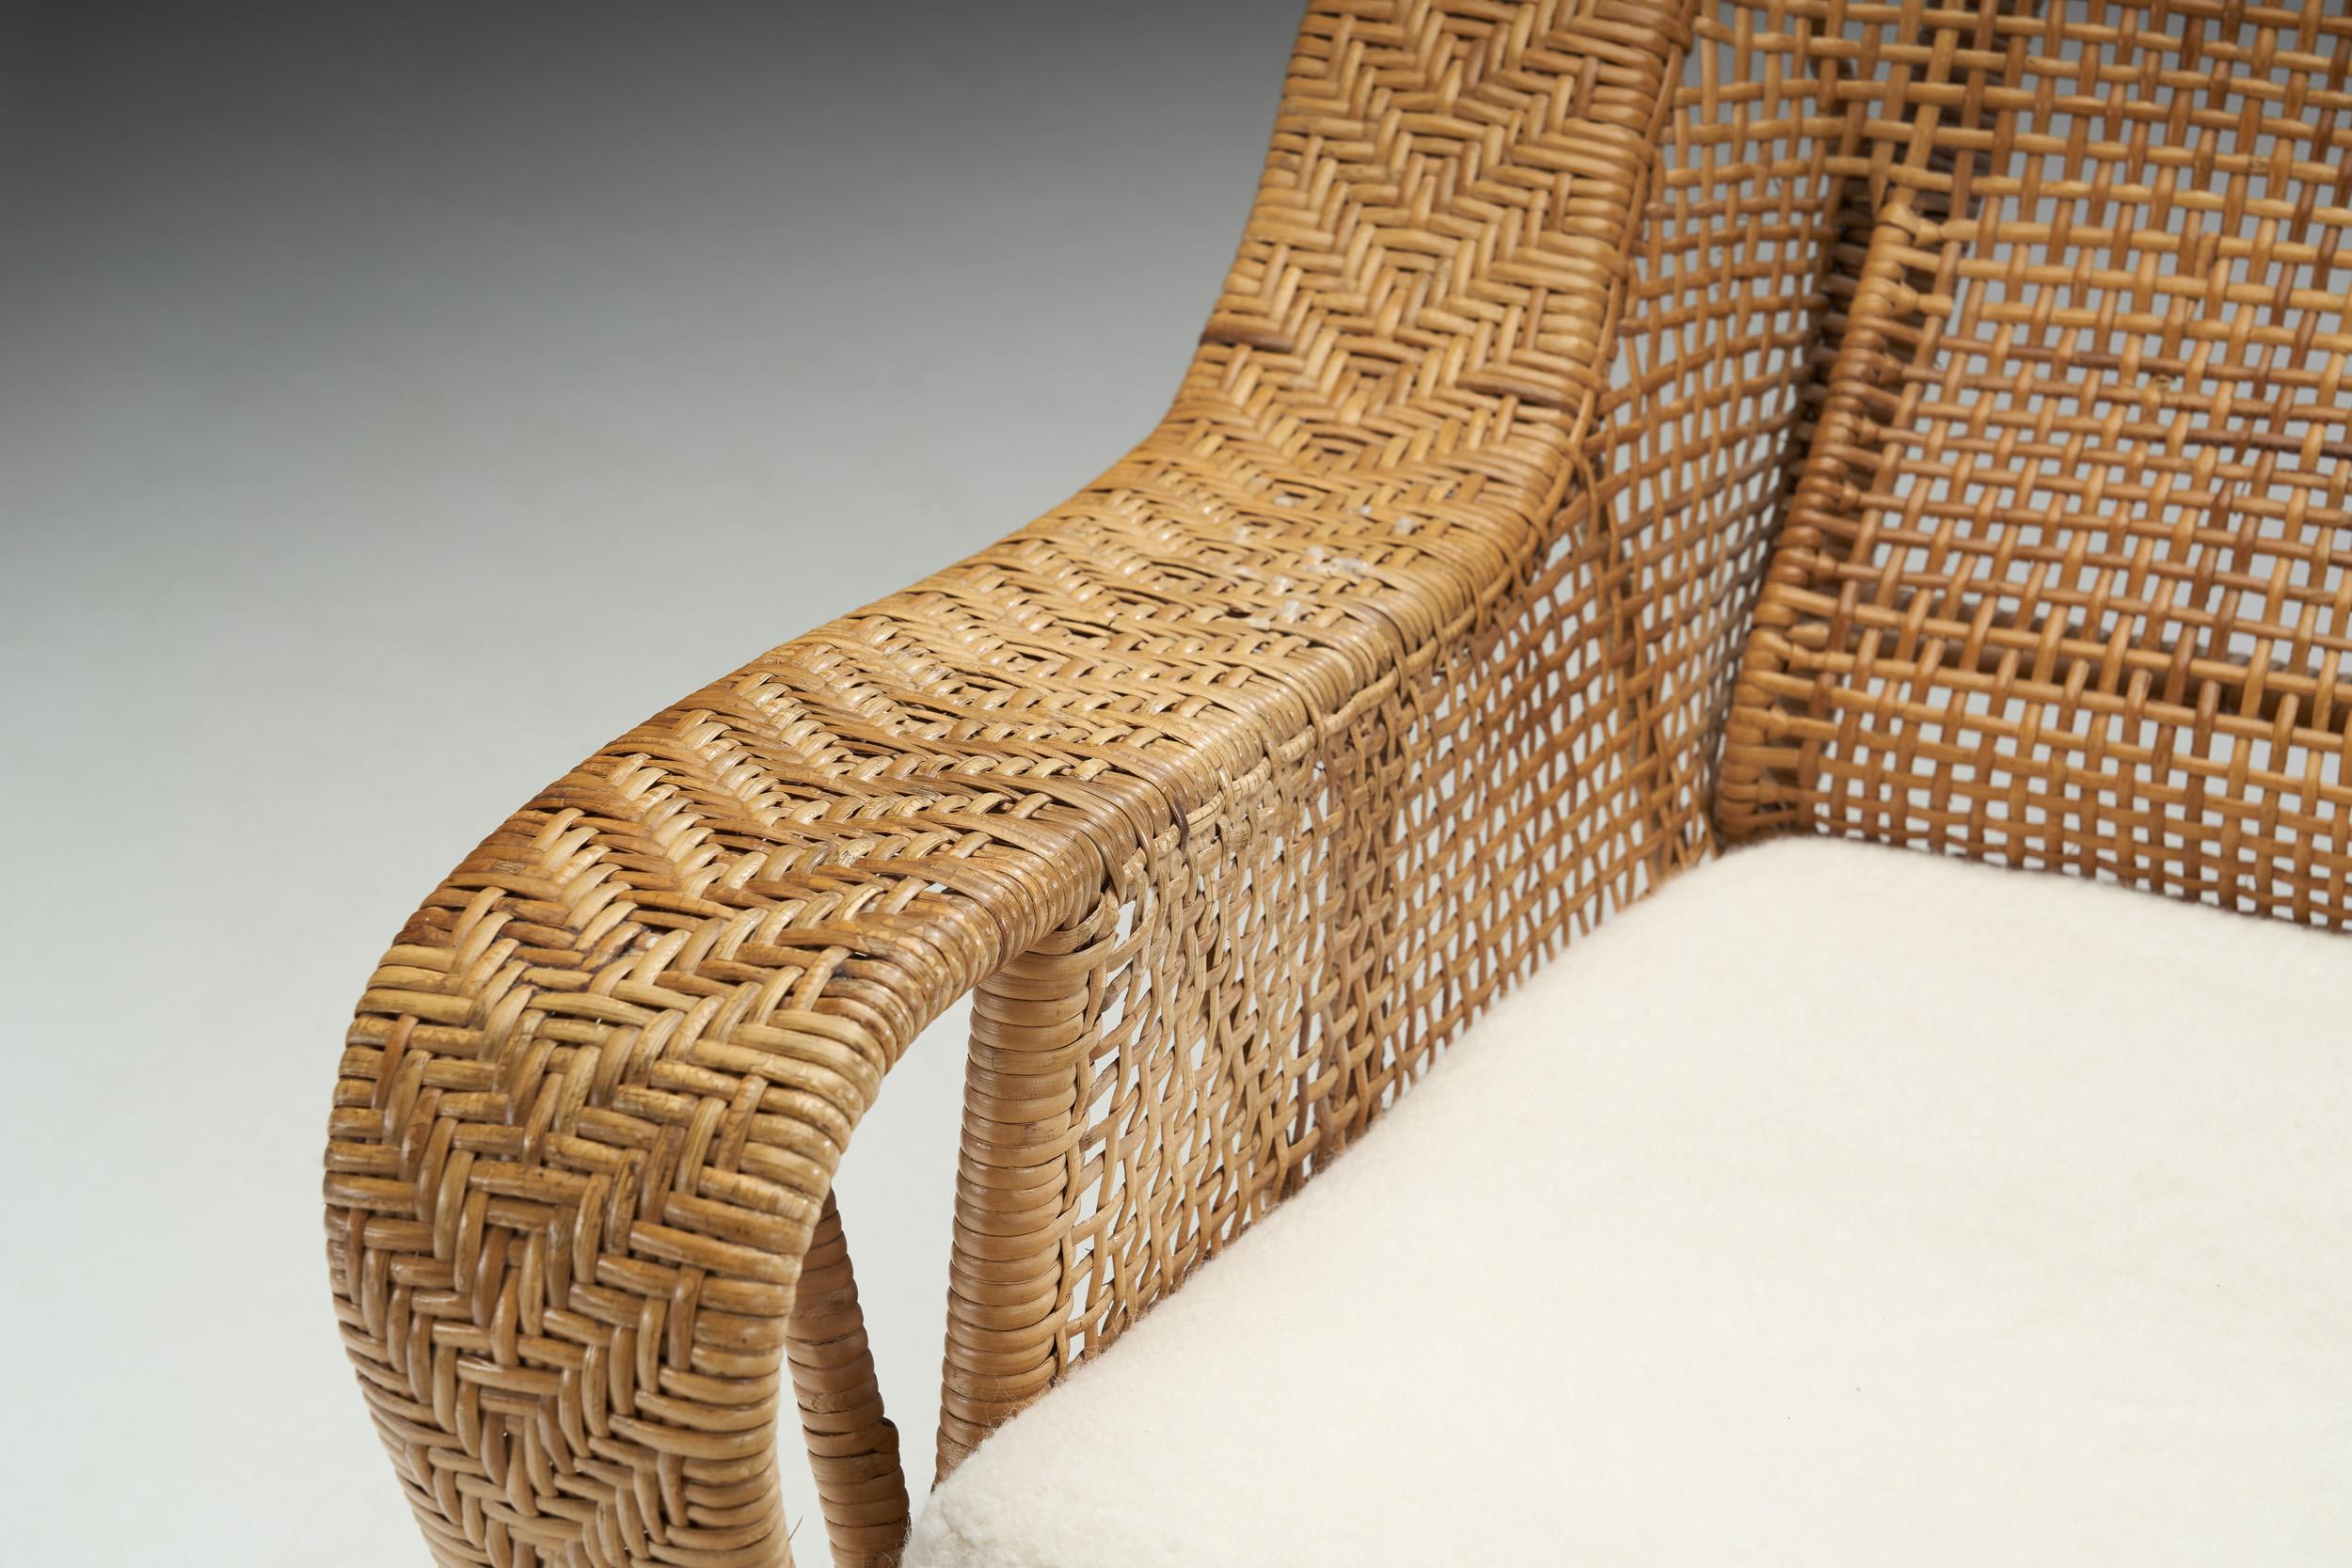 Kay Fisker “Canton” Woven Wicker Lounge Chair for Robert Wengler, Denmark 1950s For Sale 1